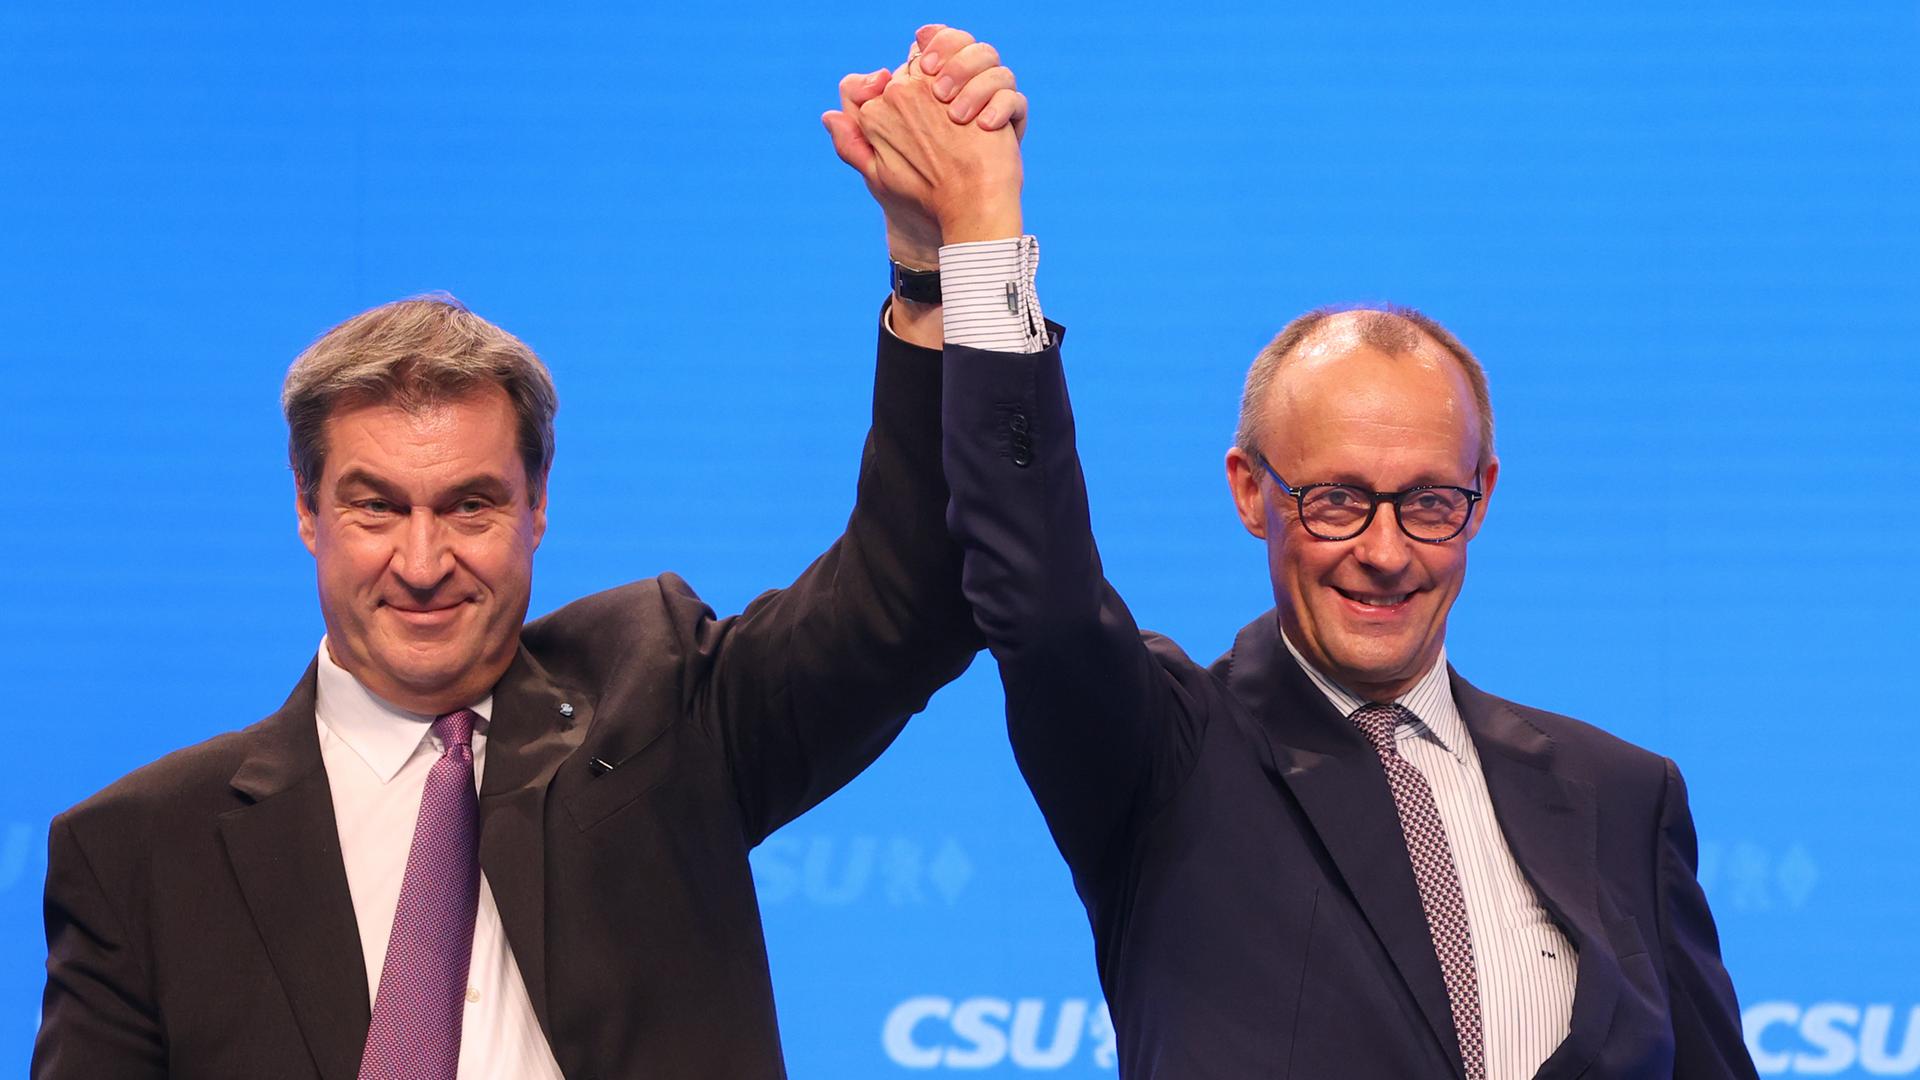 Markus Söder, CSU-Vorsitzender und bayerischer Ministerpräsident (l), steht mit Friedrich Merz,Vorsitzender der CDU, nach dessen Rede auf der Bühne.